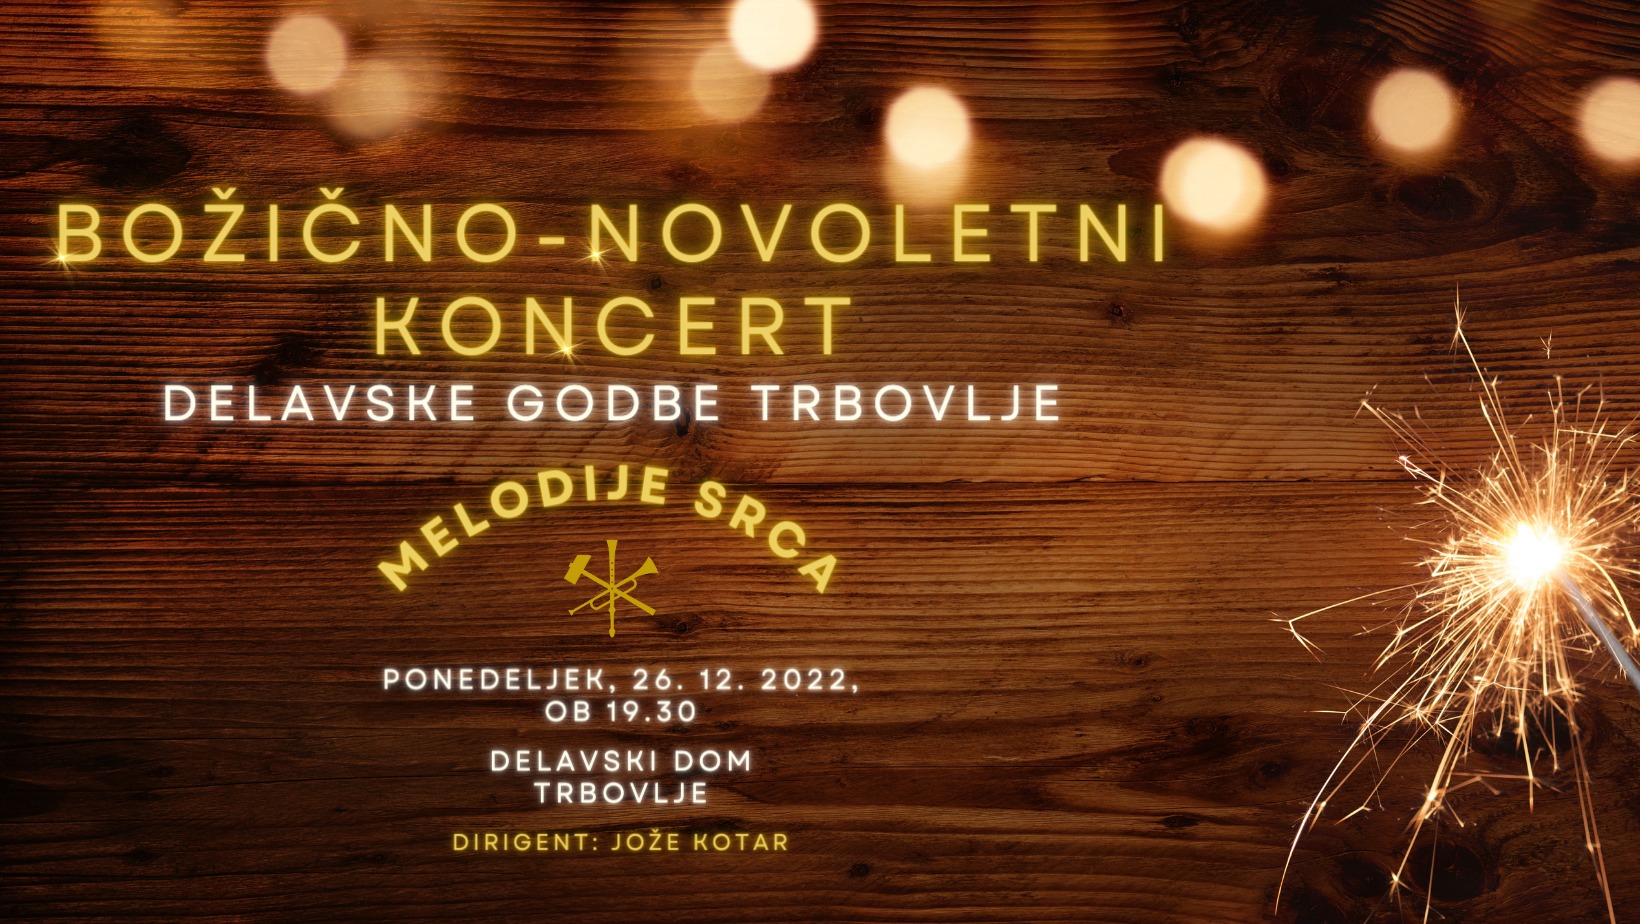 Božično novoletni koncert Delavske godbe Trbovlje